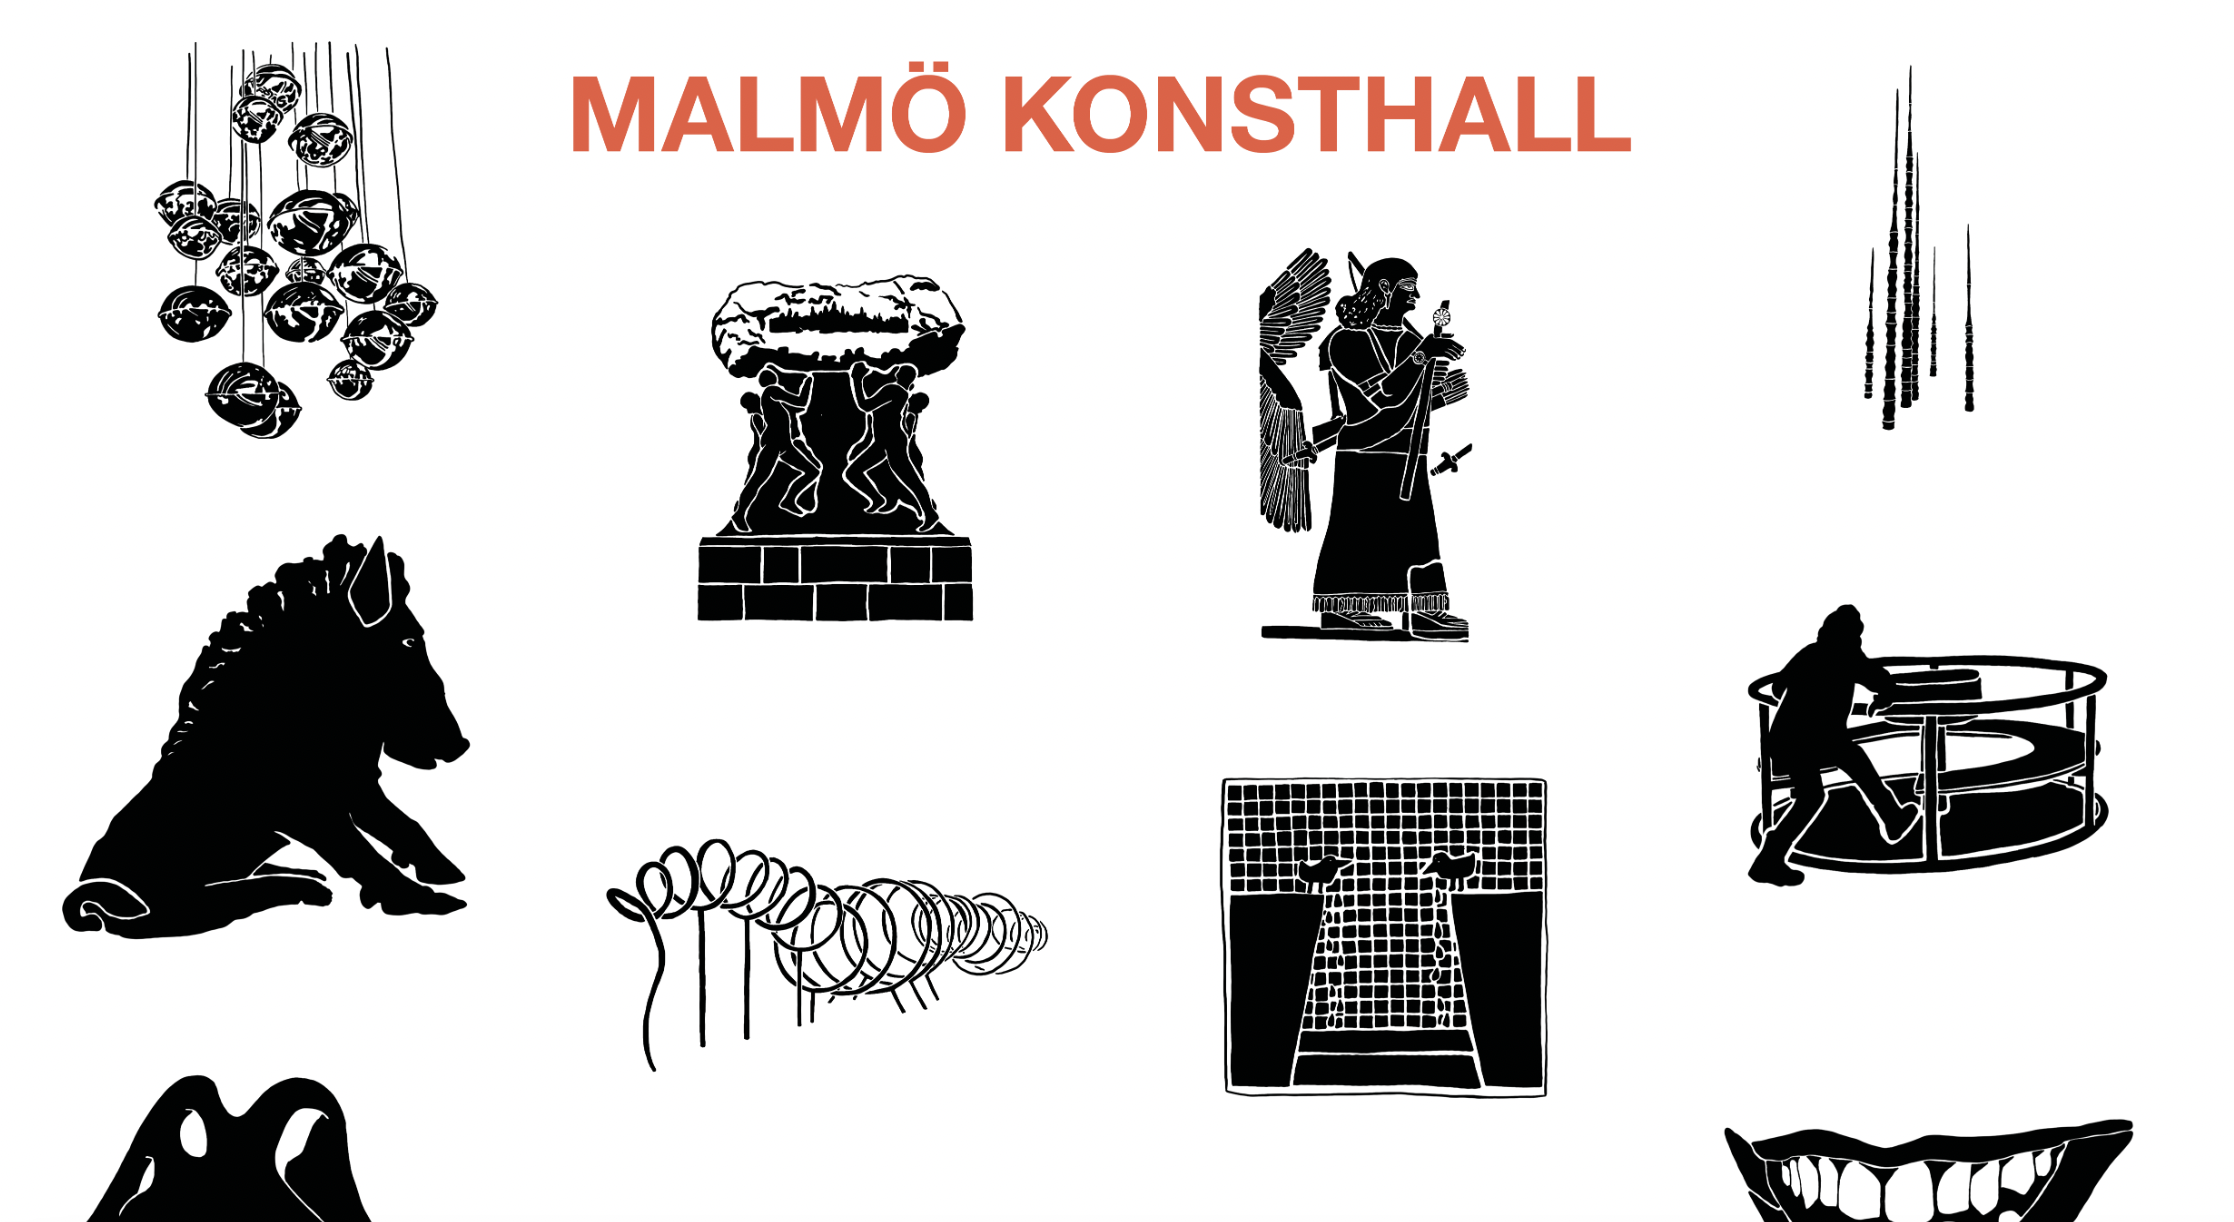 Malmö Konsthall